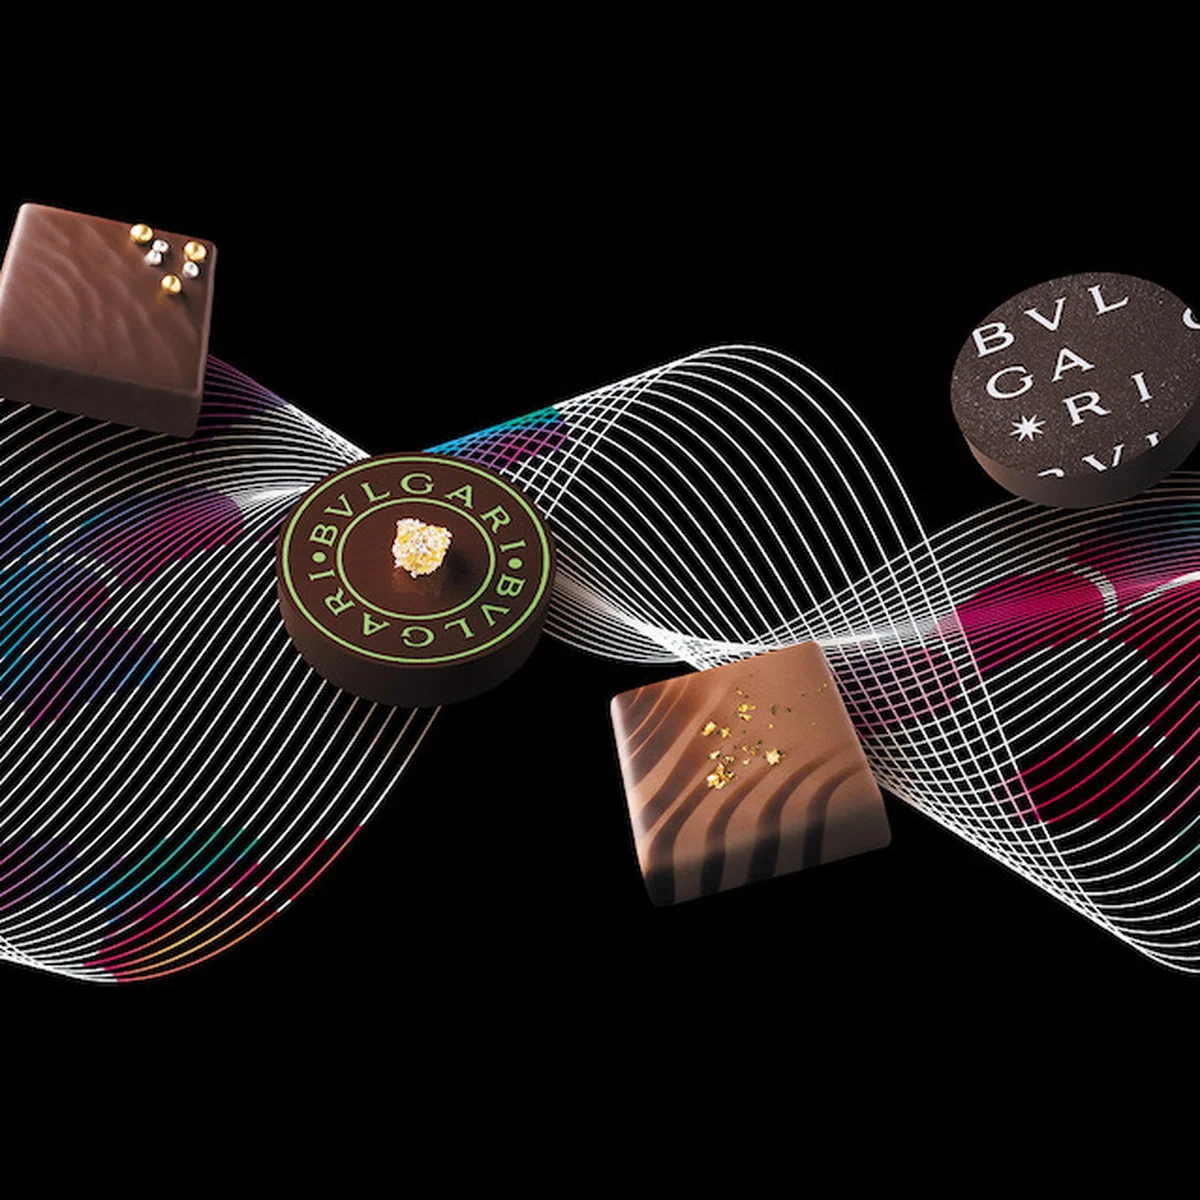 【ブルガリ イル・チョコラート】からサステイナブルな発想のヴァレンタイン限定ボックスが登場。カカオ豆から選んだ初のオリジナルチョコレートも！